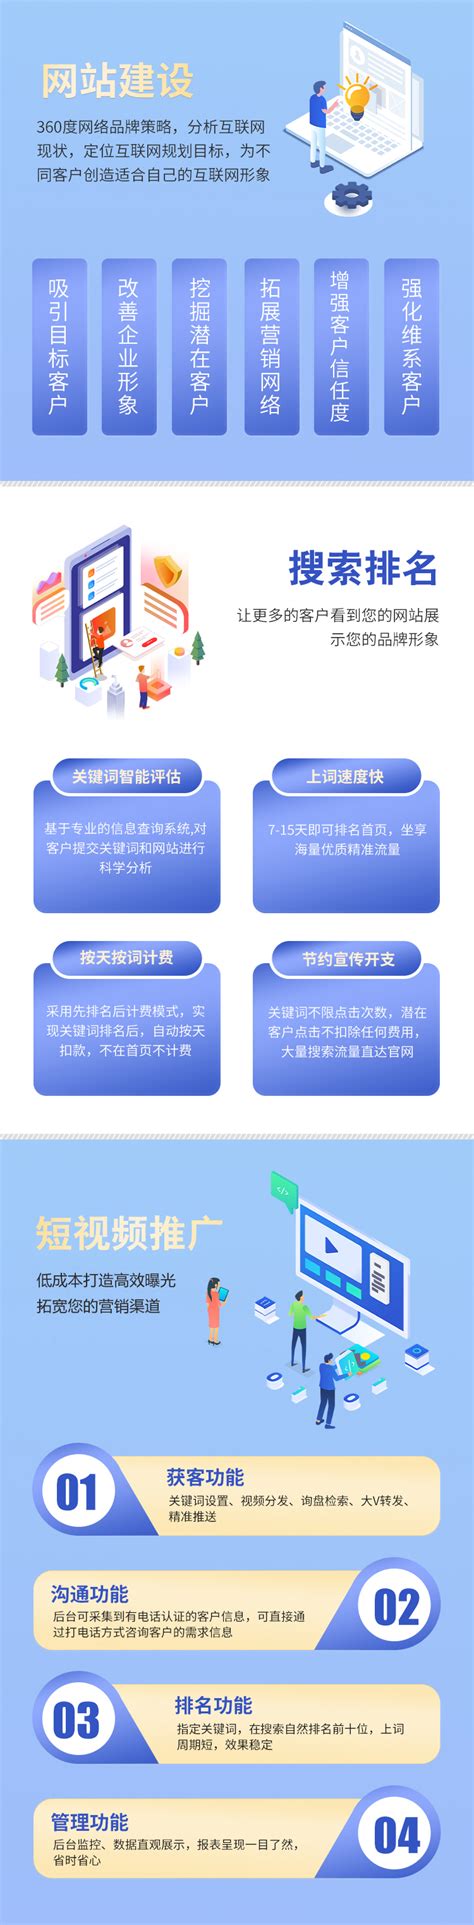 重庆网站建设与开发